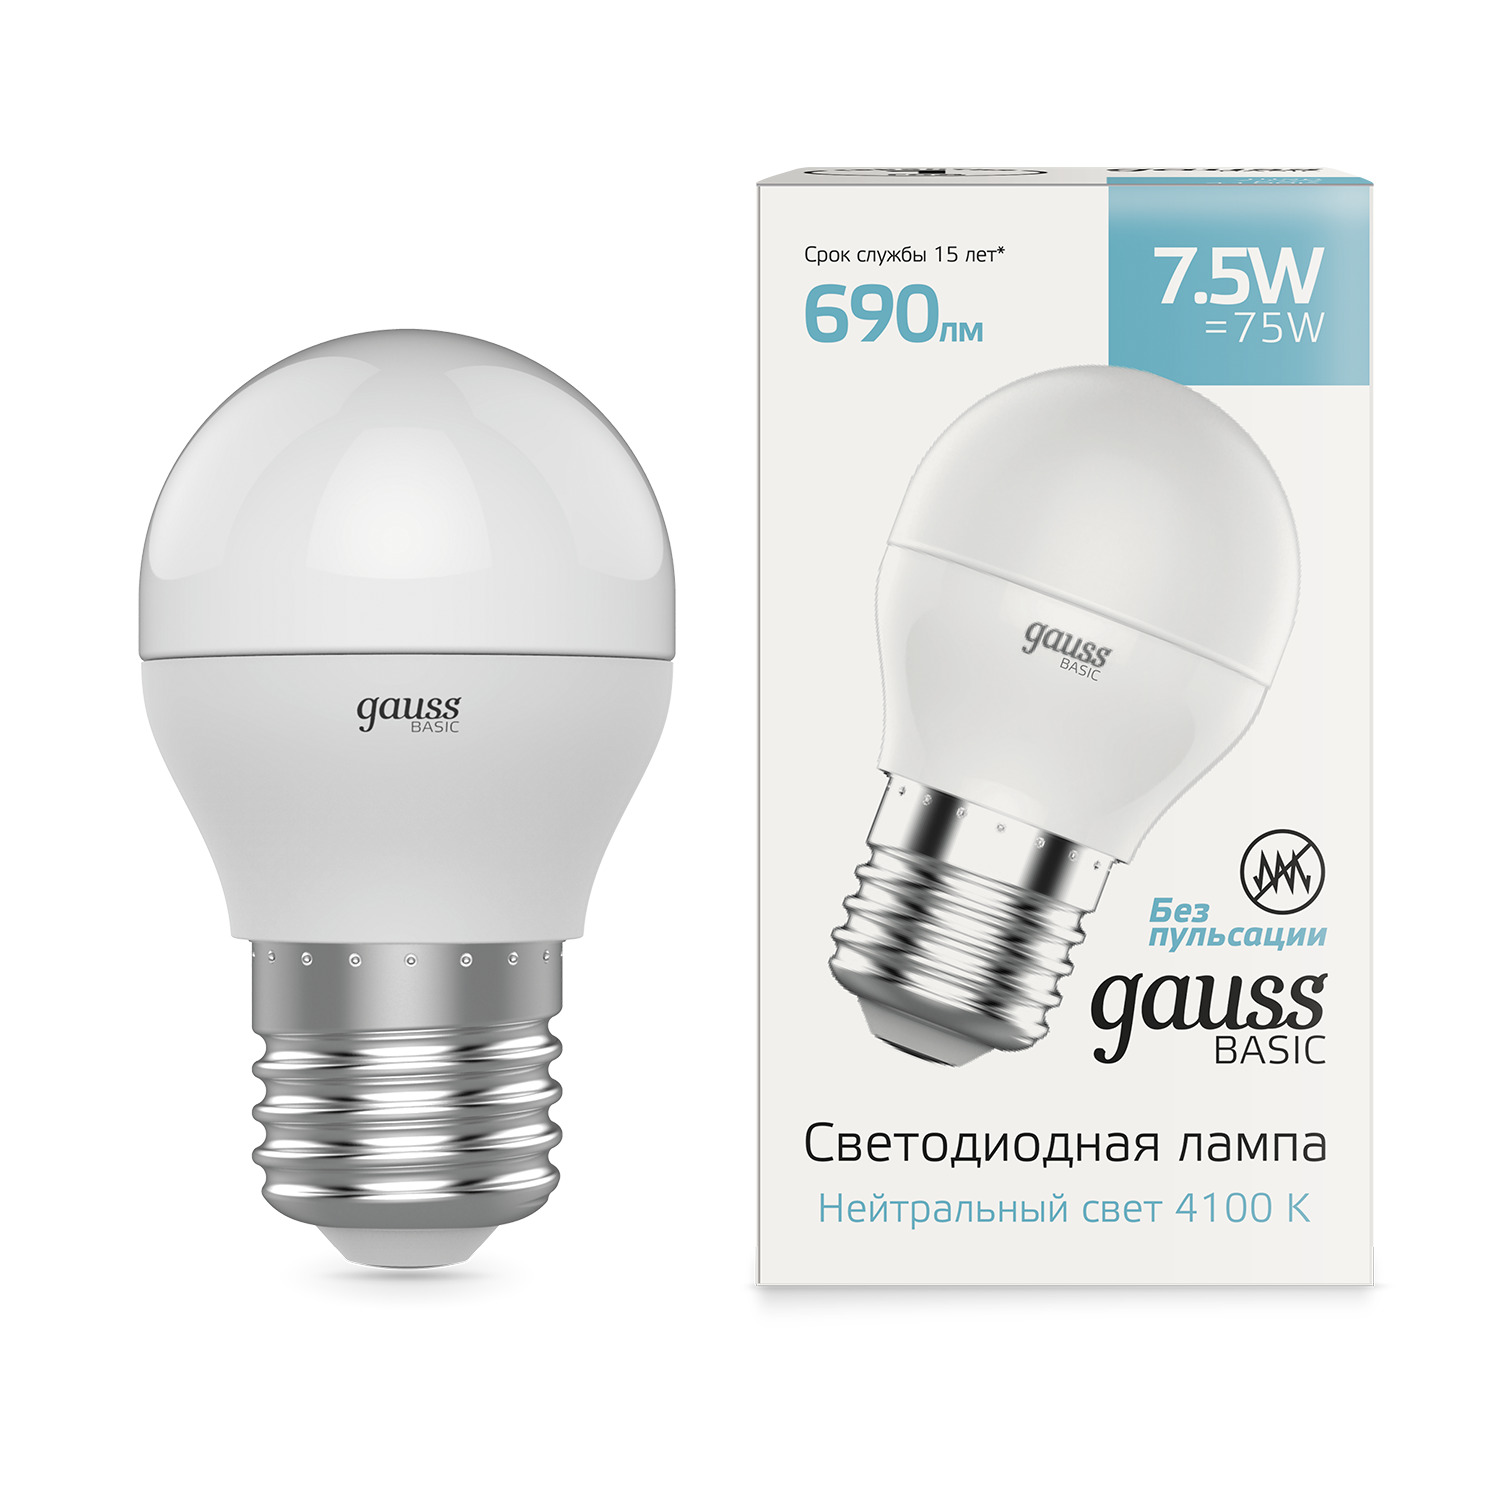 Лампа Gauss Basic Шар 7,5W 690lm 4100K E27 LED, 10 шт gauss led elementary mr16 gu5 3 5 5w 4100к 1 10 100